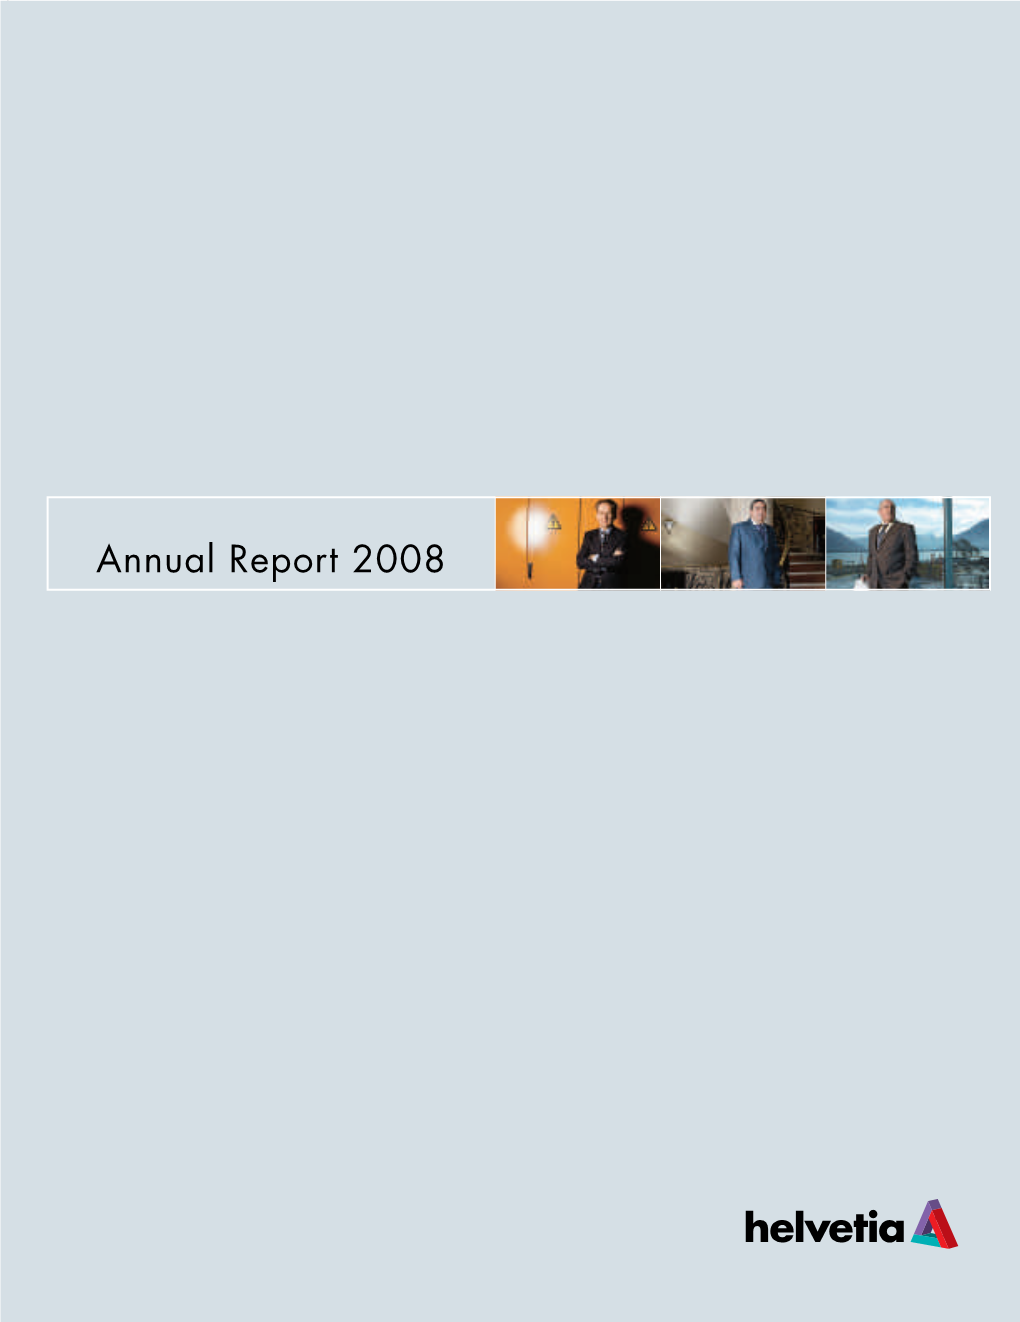 Annual Report 2008 Annual Report 2008 Annual Report